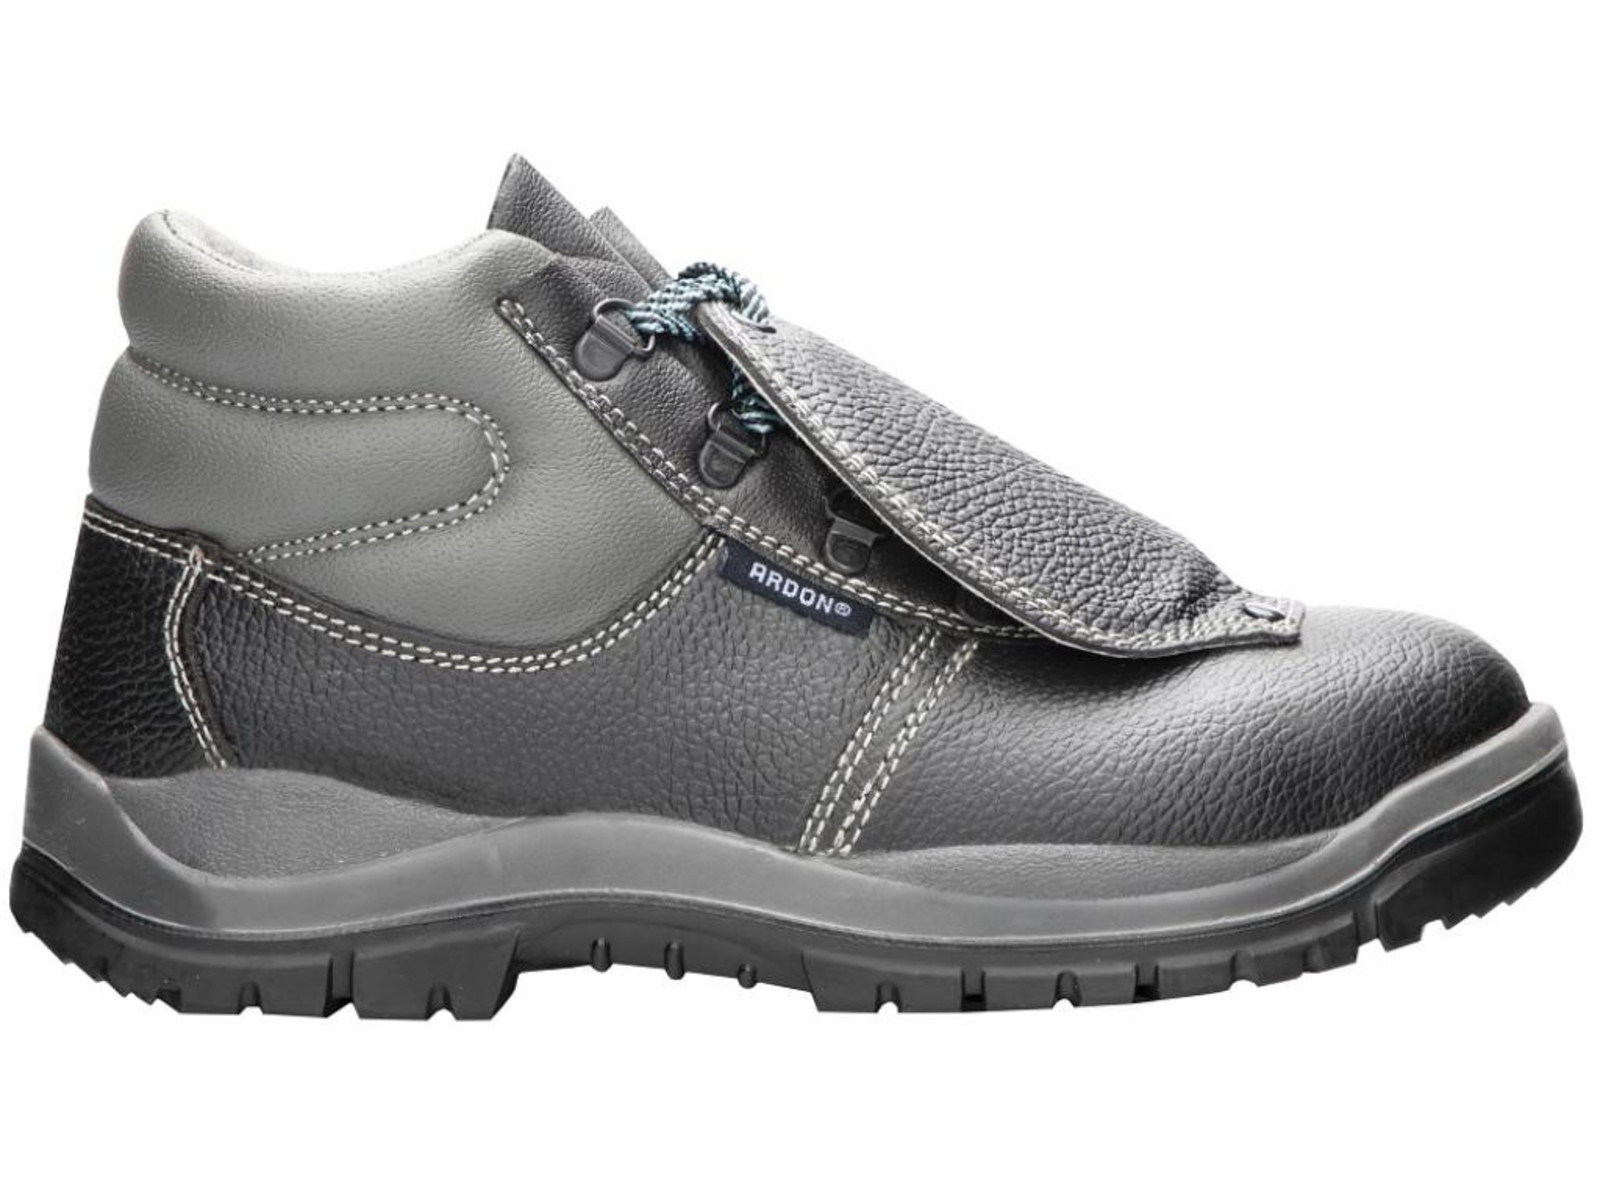 Bezpečnostná obuv ARDON® Integral S1P - veľkosť: 46, farba: sivá/čierna